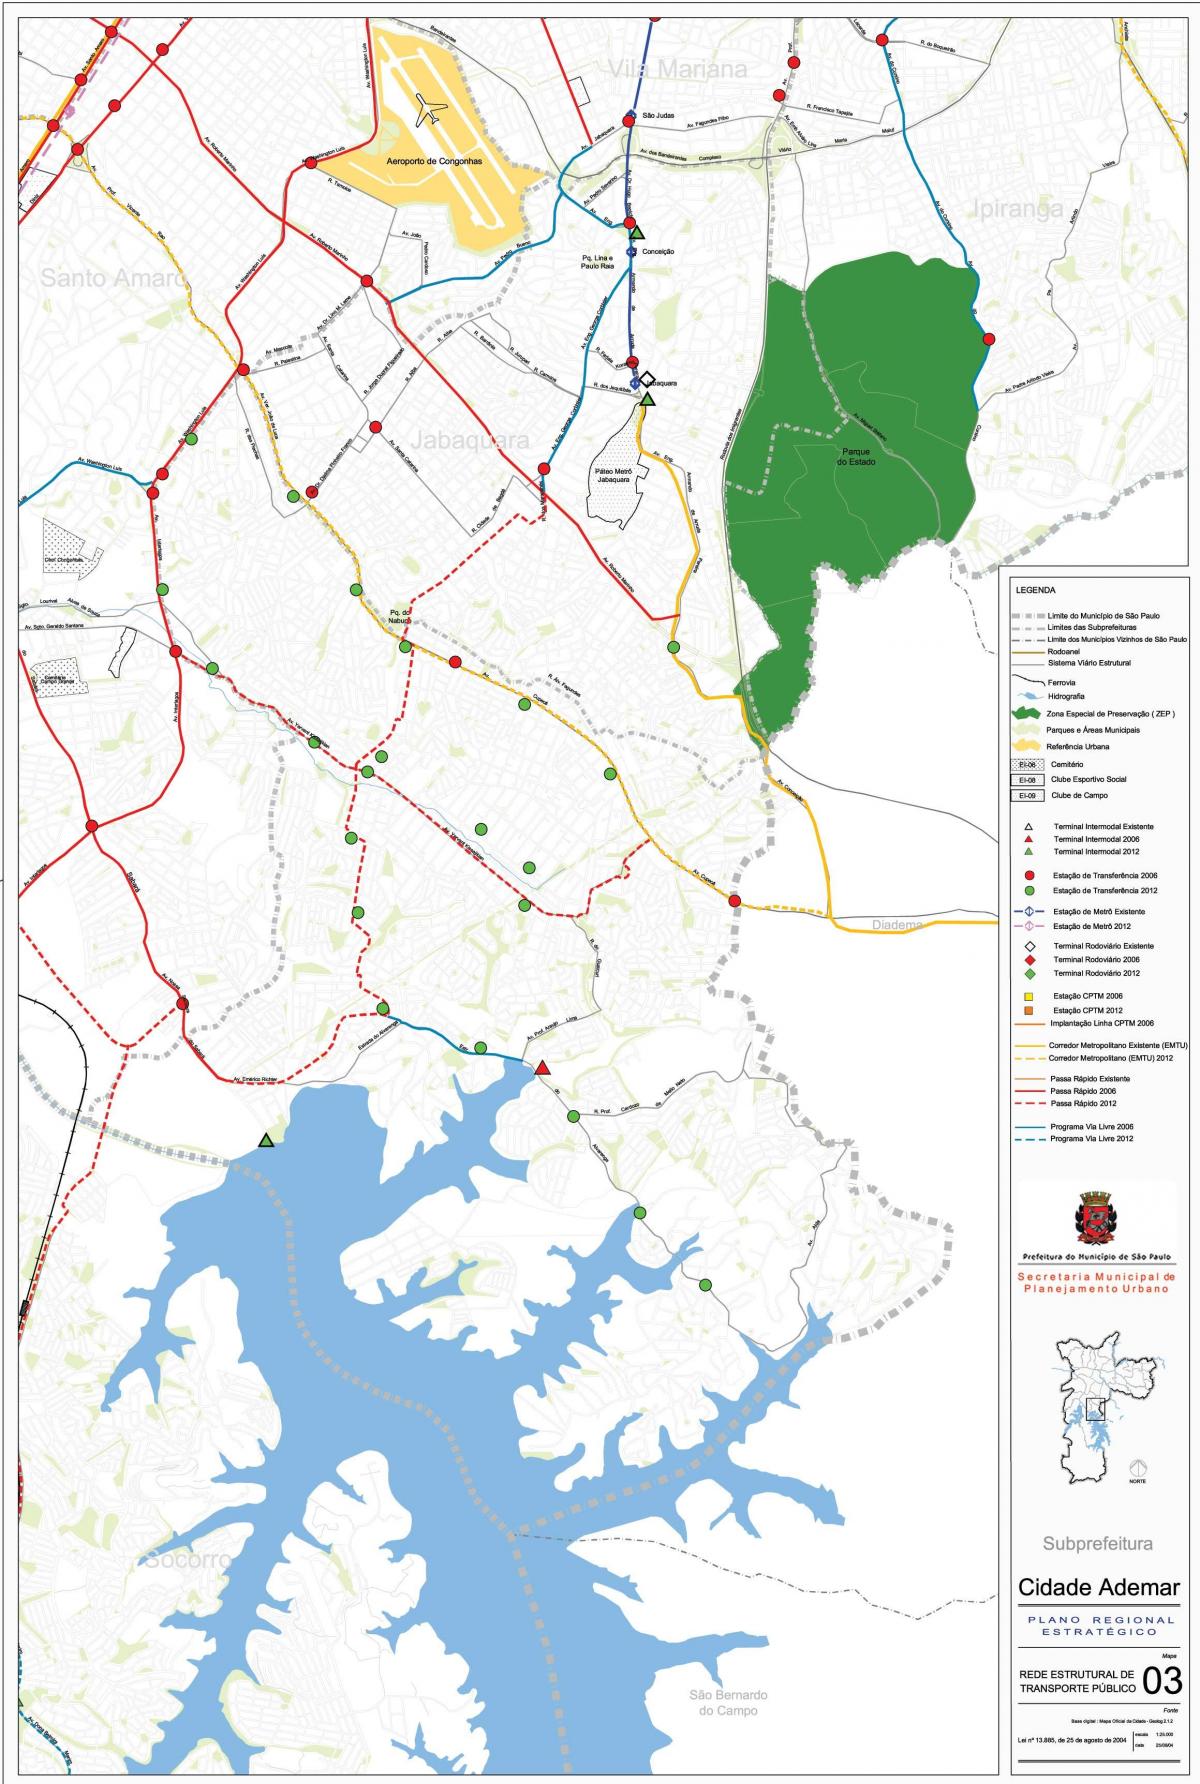 Карта Сидаде Адемаре Сао Пауло - јавни превоз